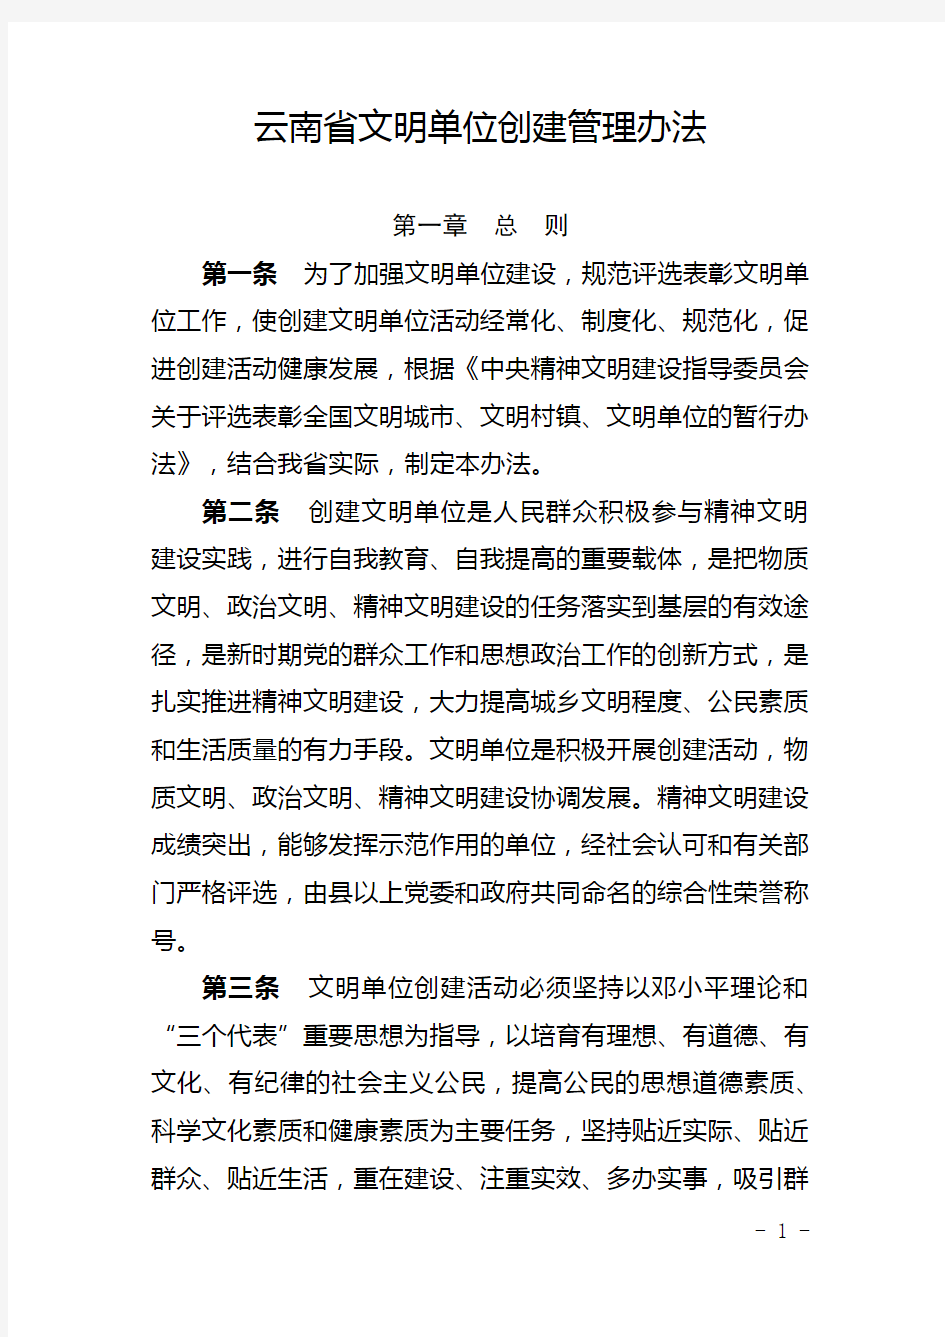 云南省文明单位创建管理办法